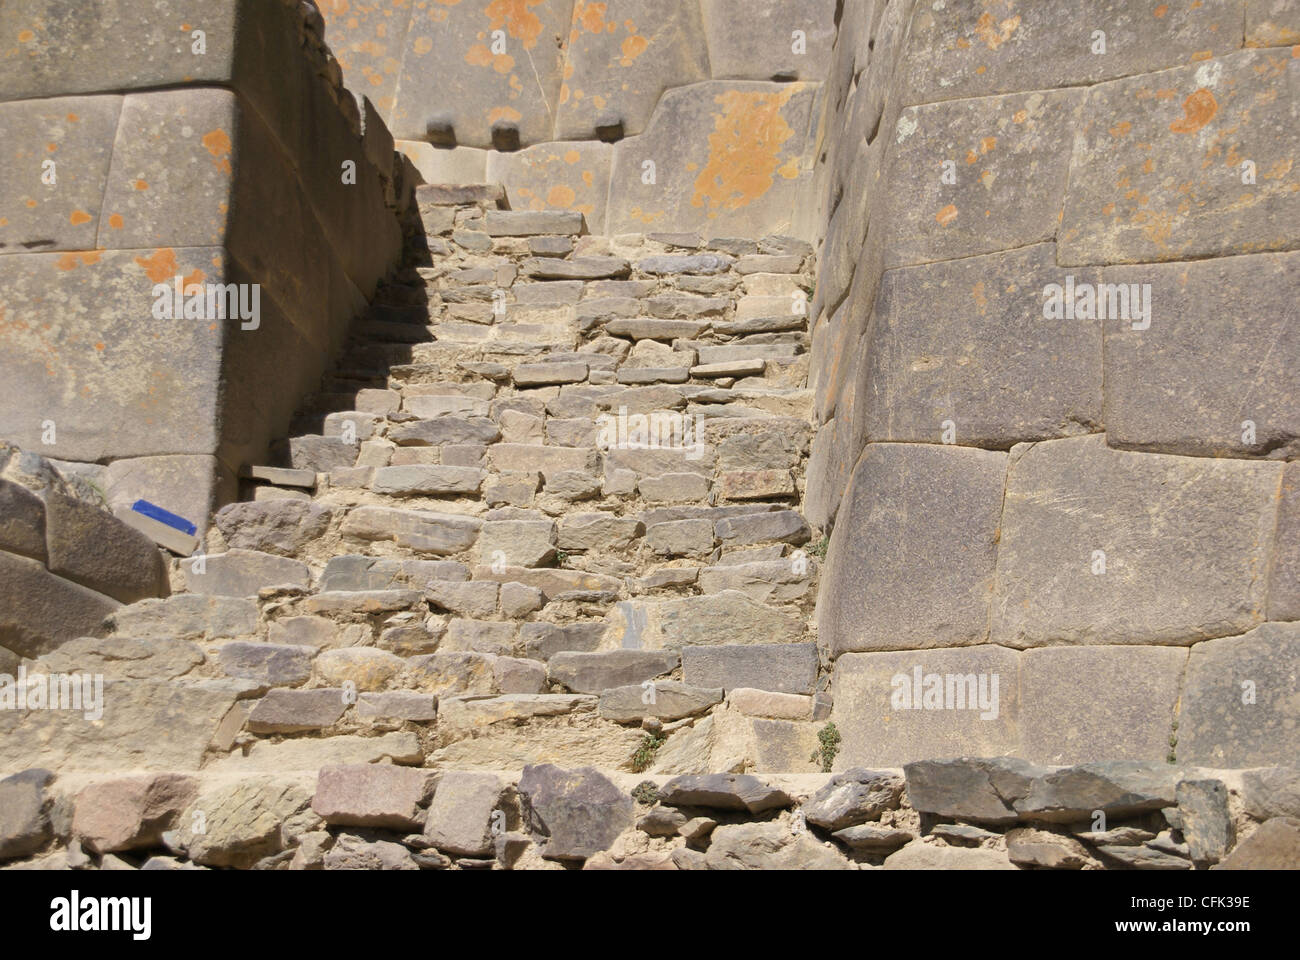 Inca stairway and massive wall, Ollantaytambo, Peru, South America Stock Photo